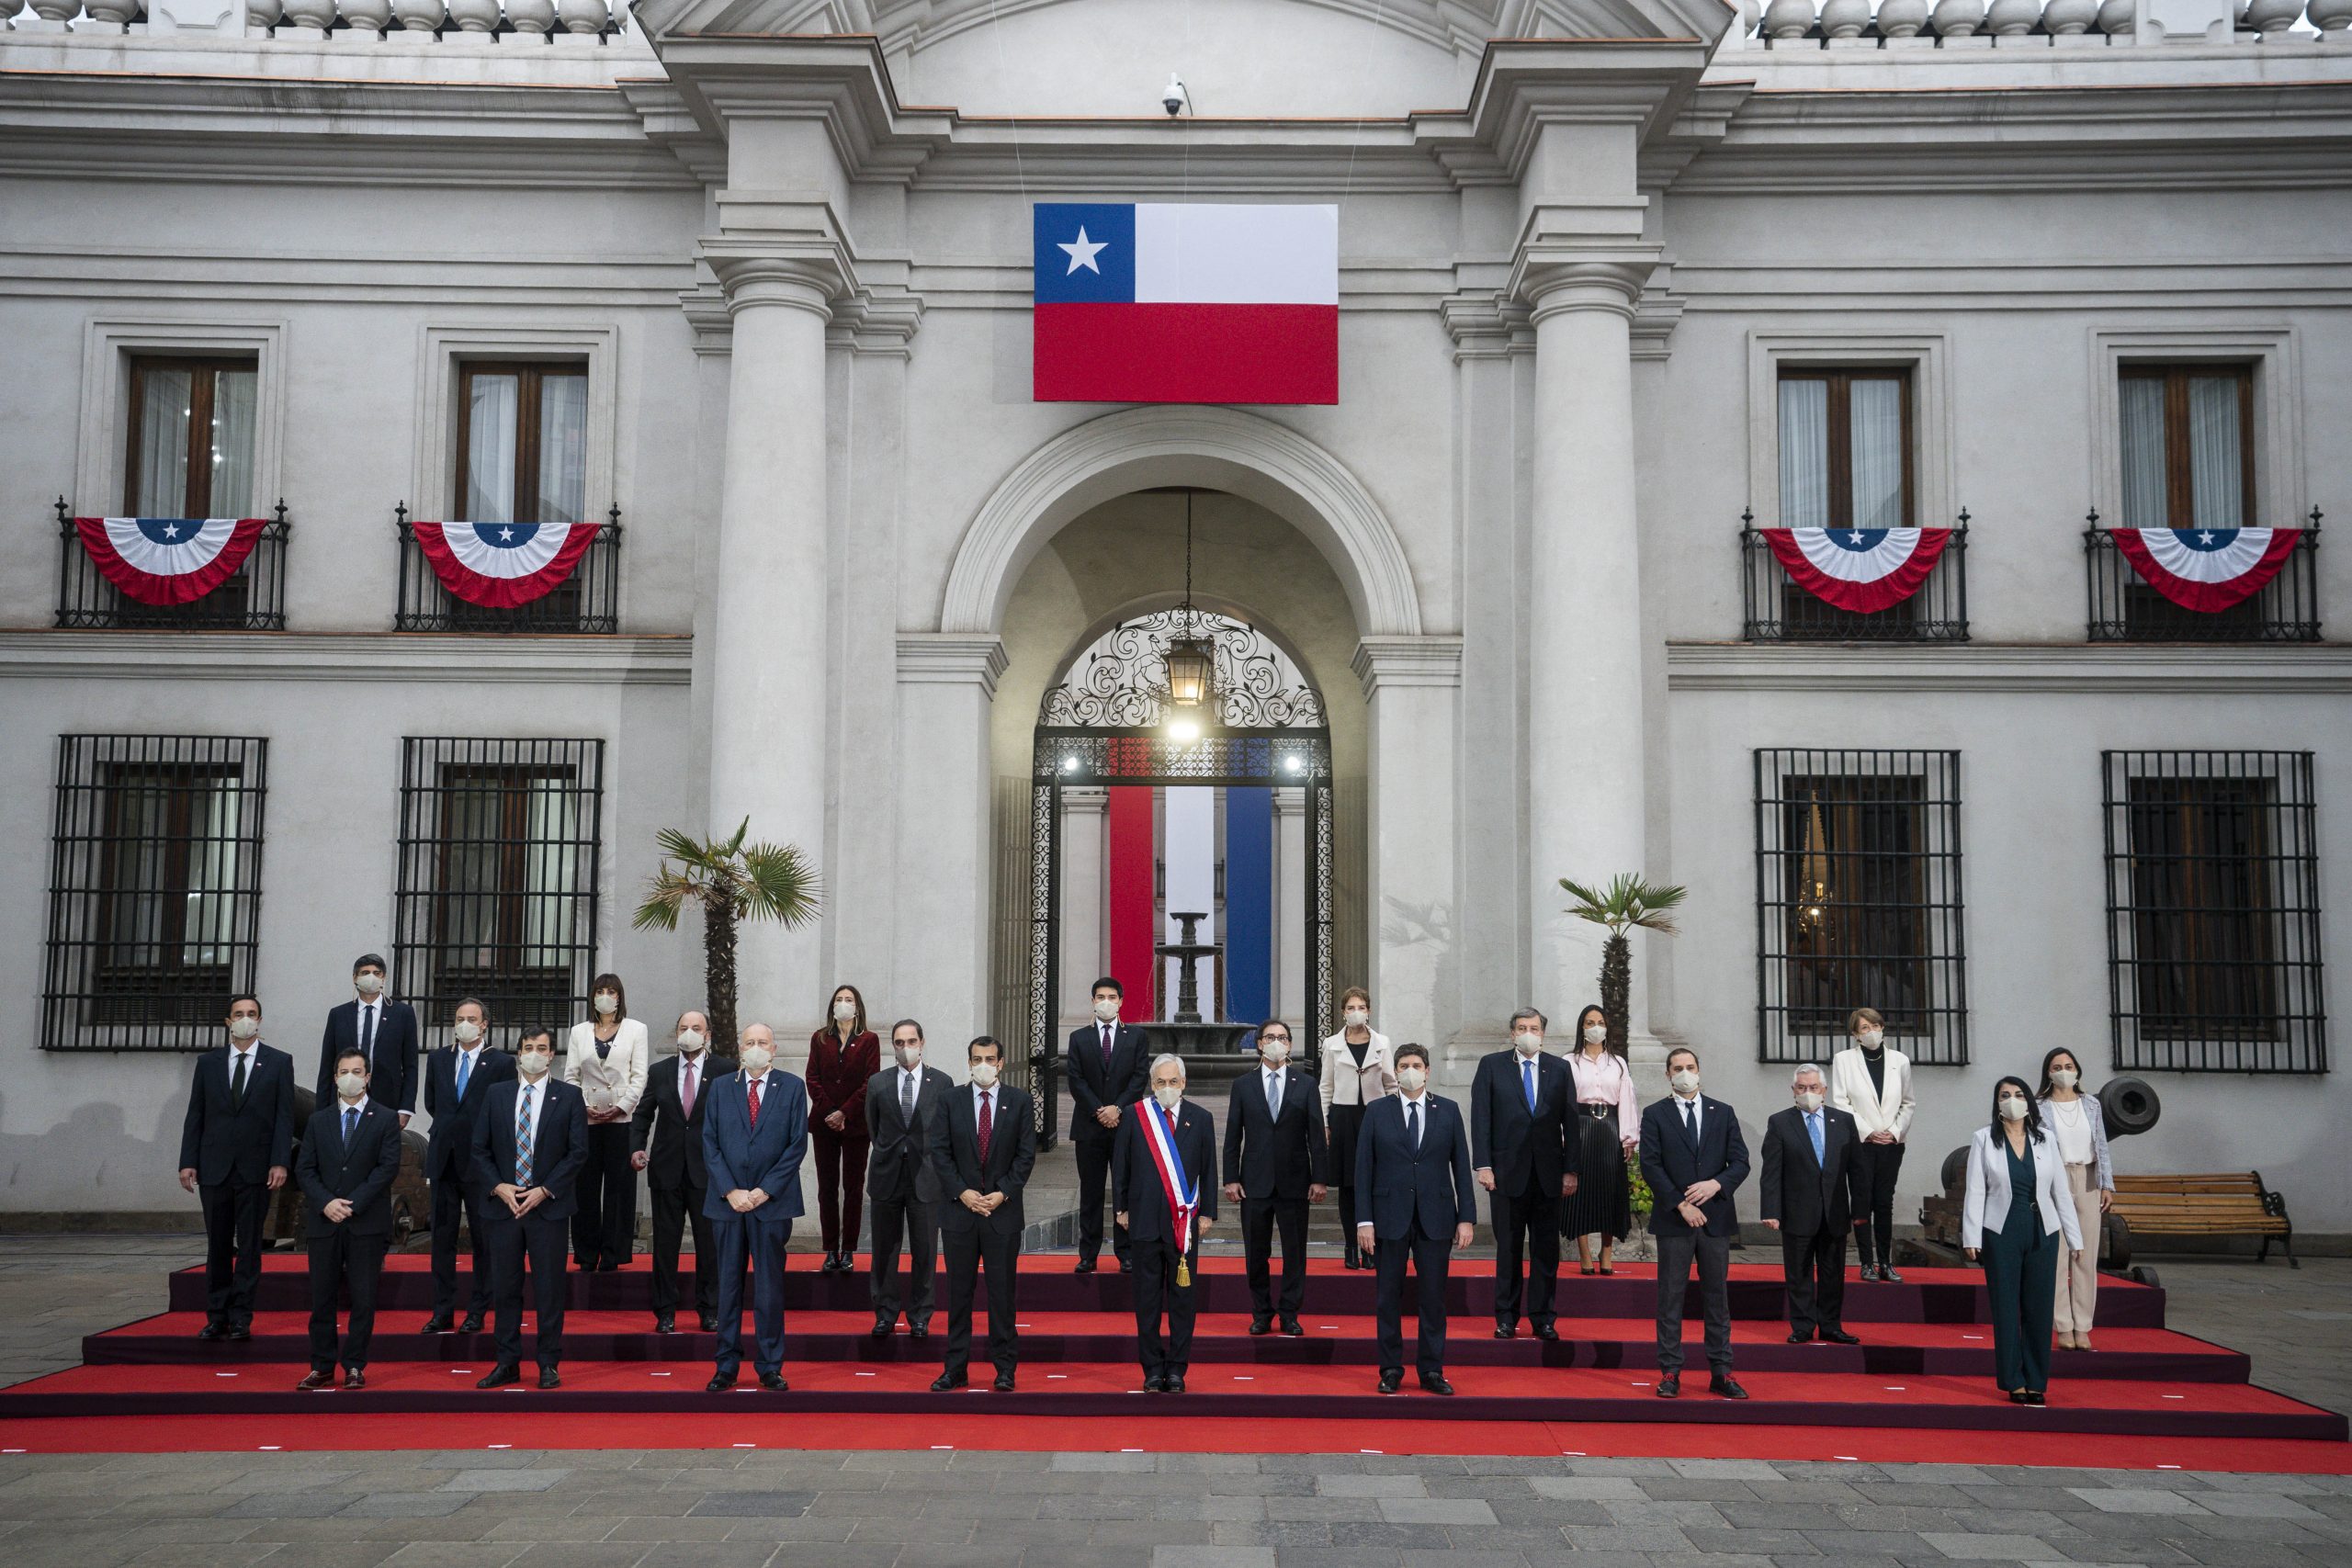 Matrimonio igualitario y el perdón a Chile: los anuncios de Piñera en su última cuenta pública